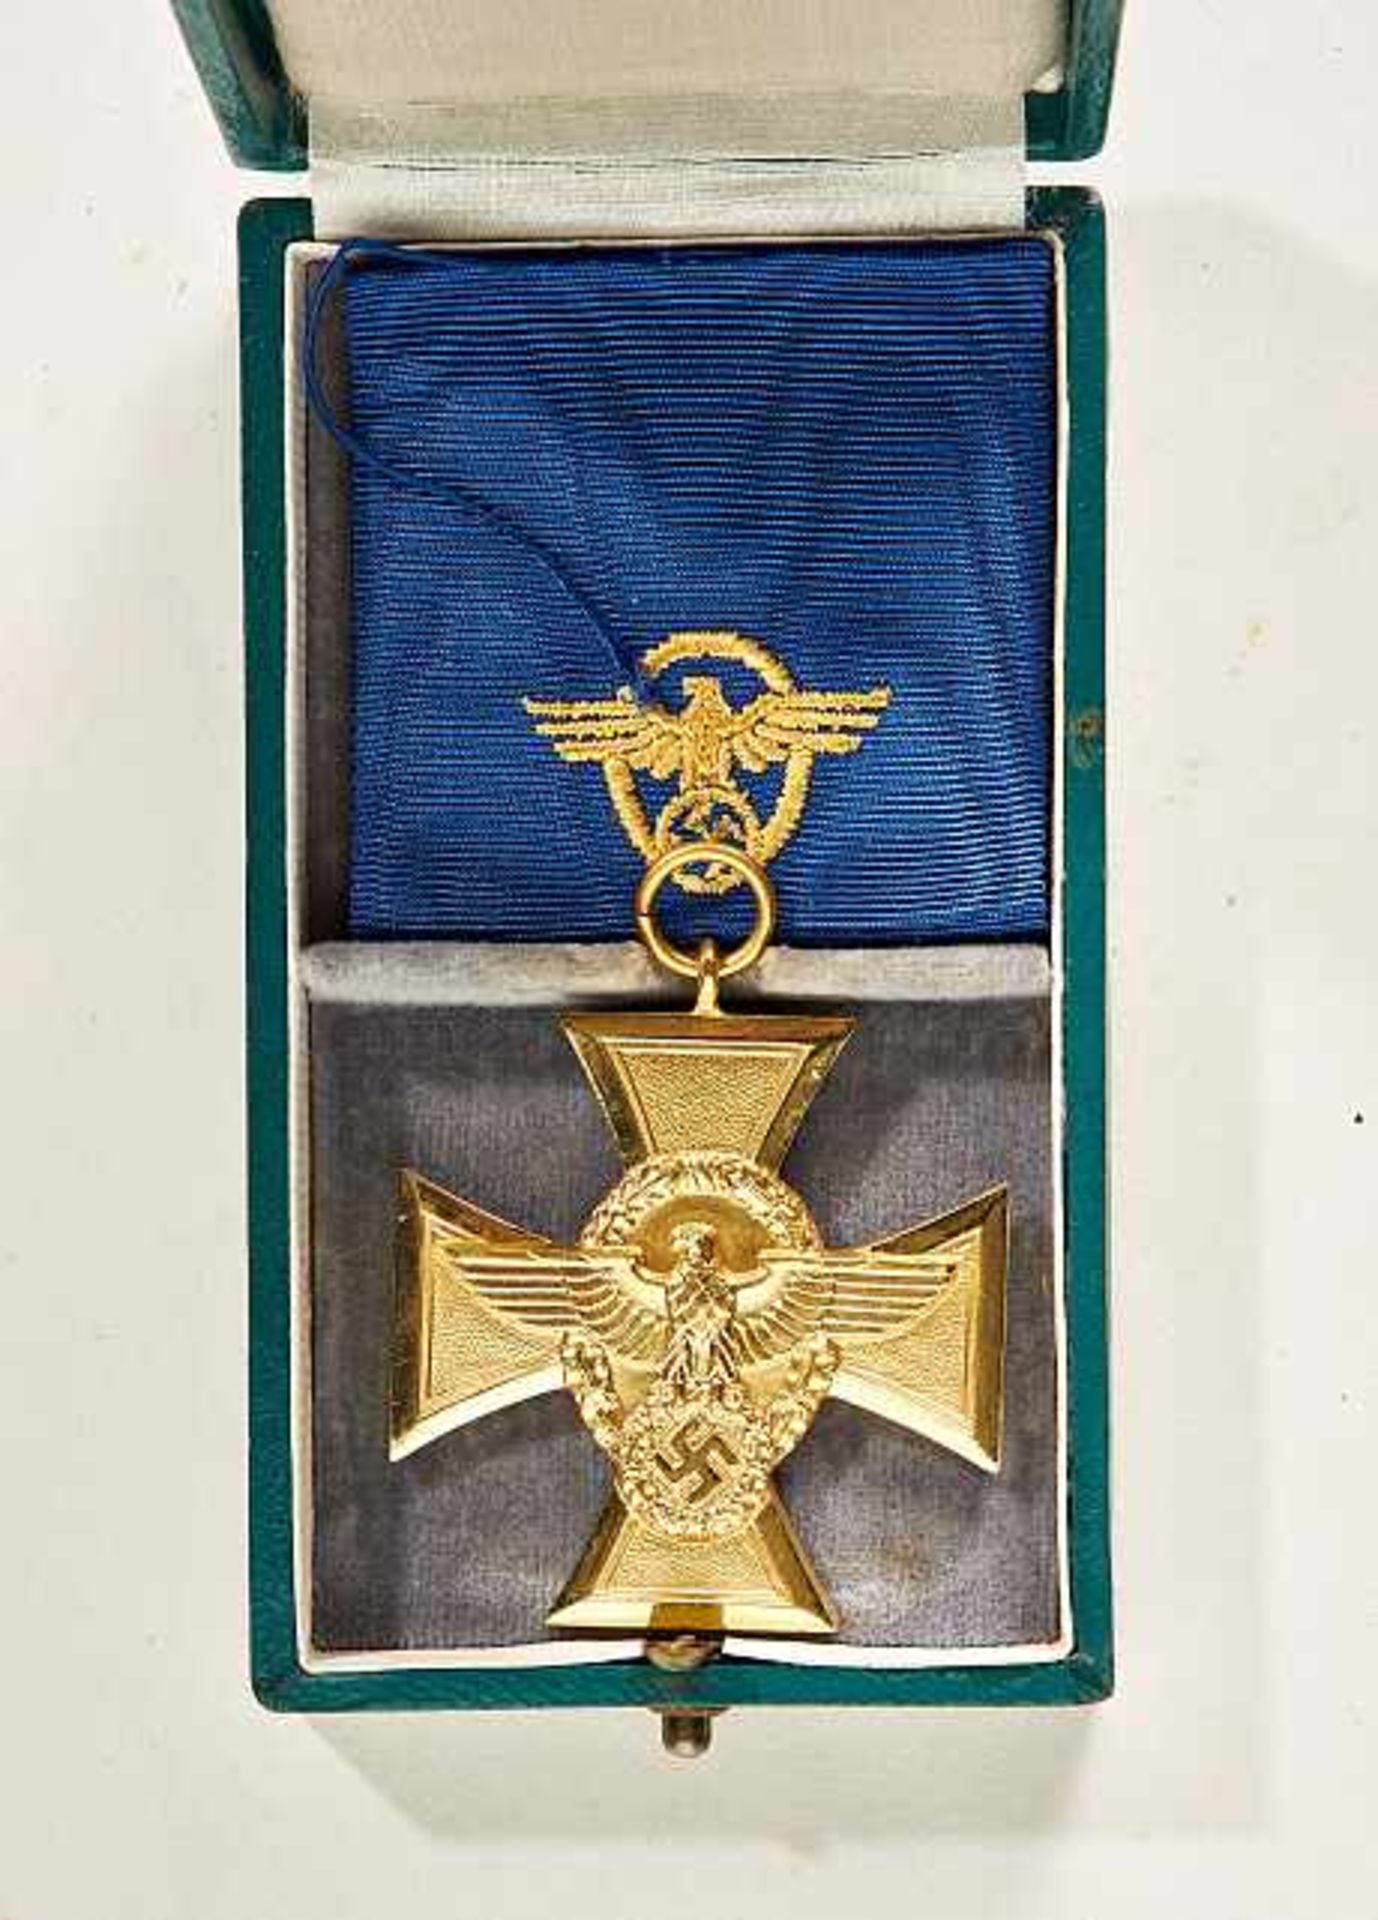 Deutsches Reich 1933 - 1945 - General Awards - Zivile Orden und Auszeichnungen : Police 25 Year